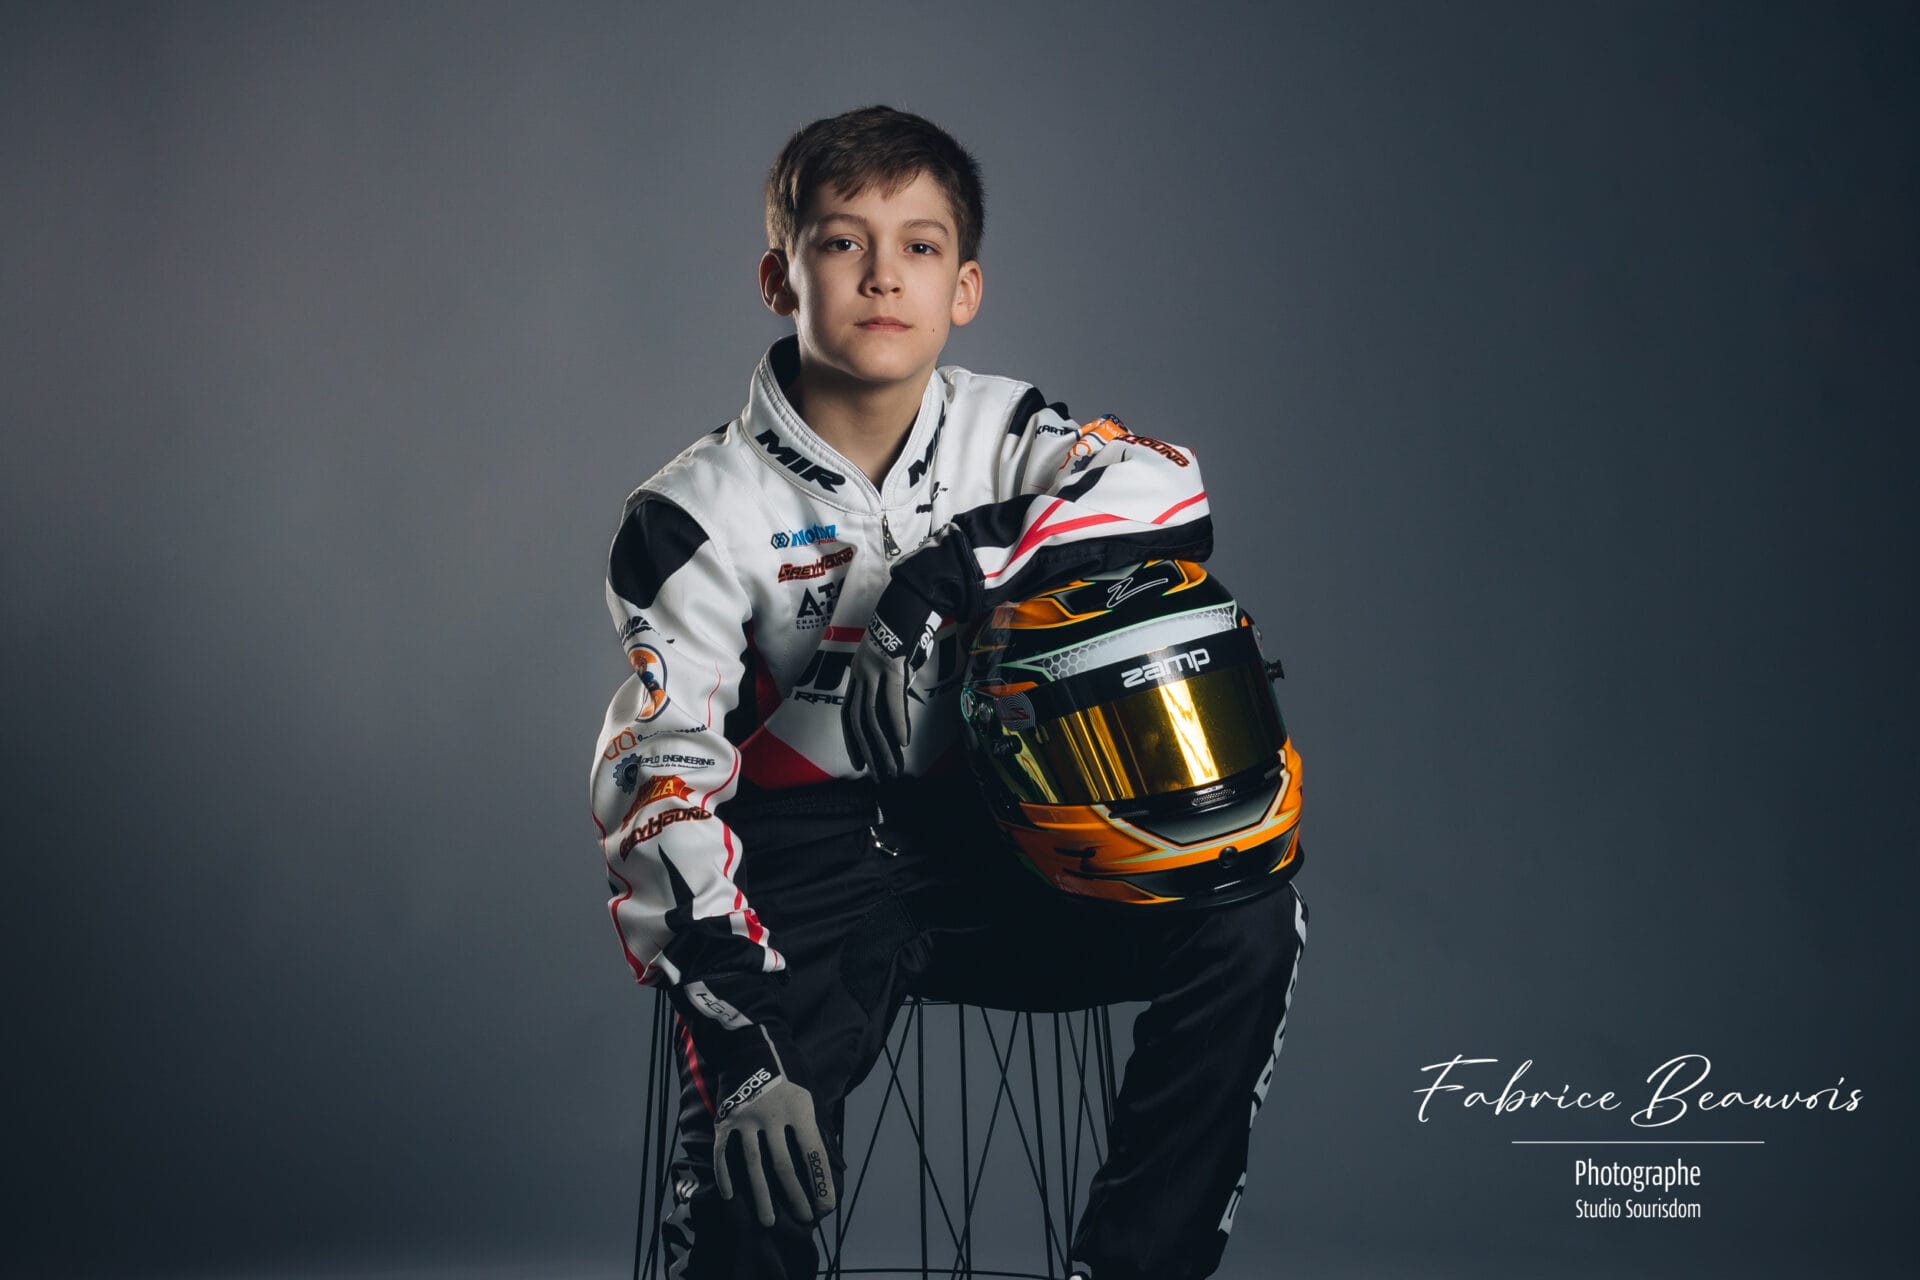 Portrait assis avec son bras sur le casque pour un champion de kart